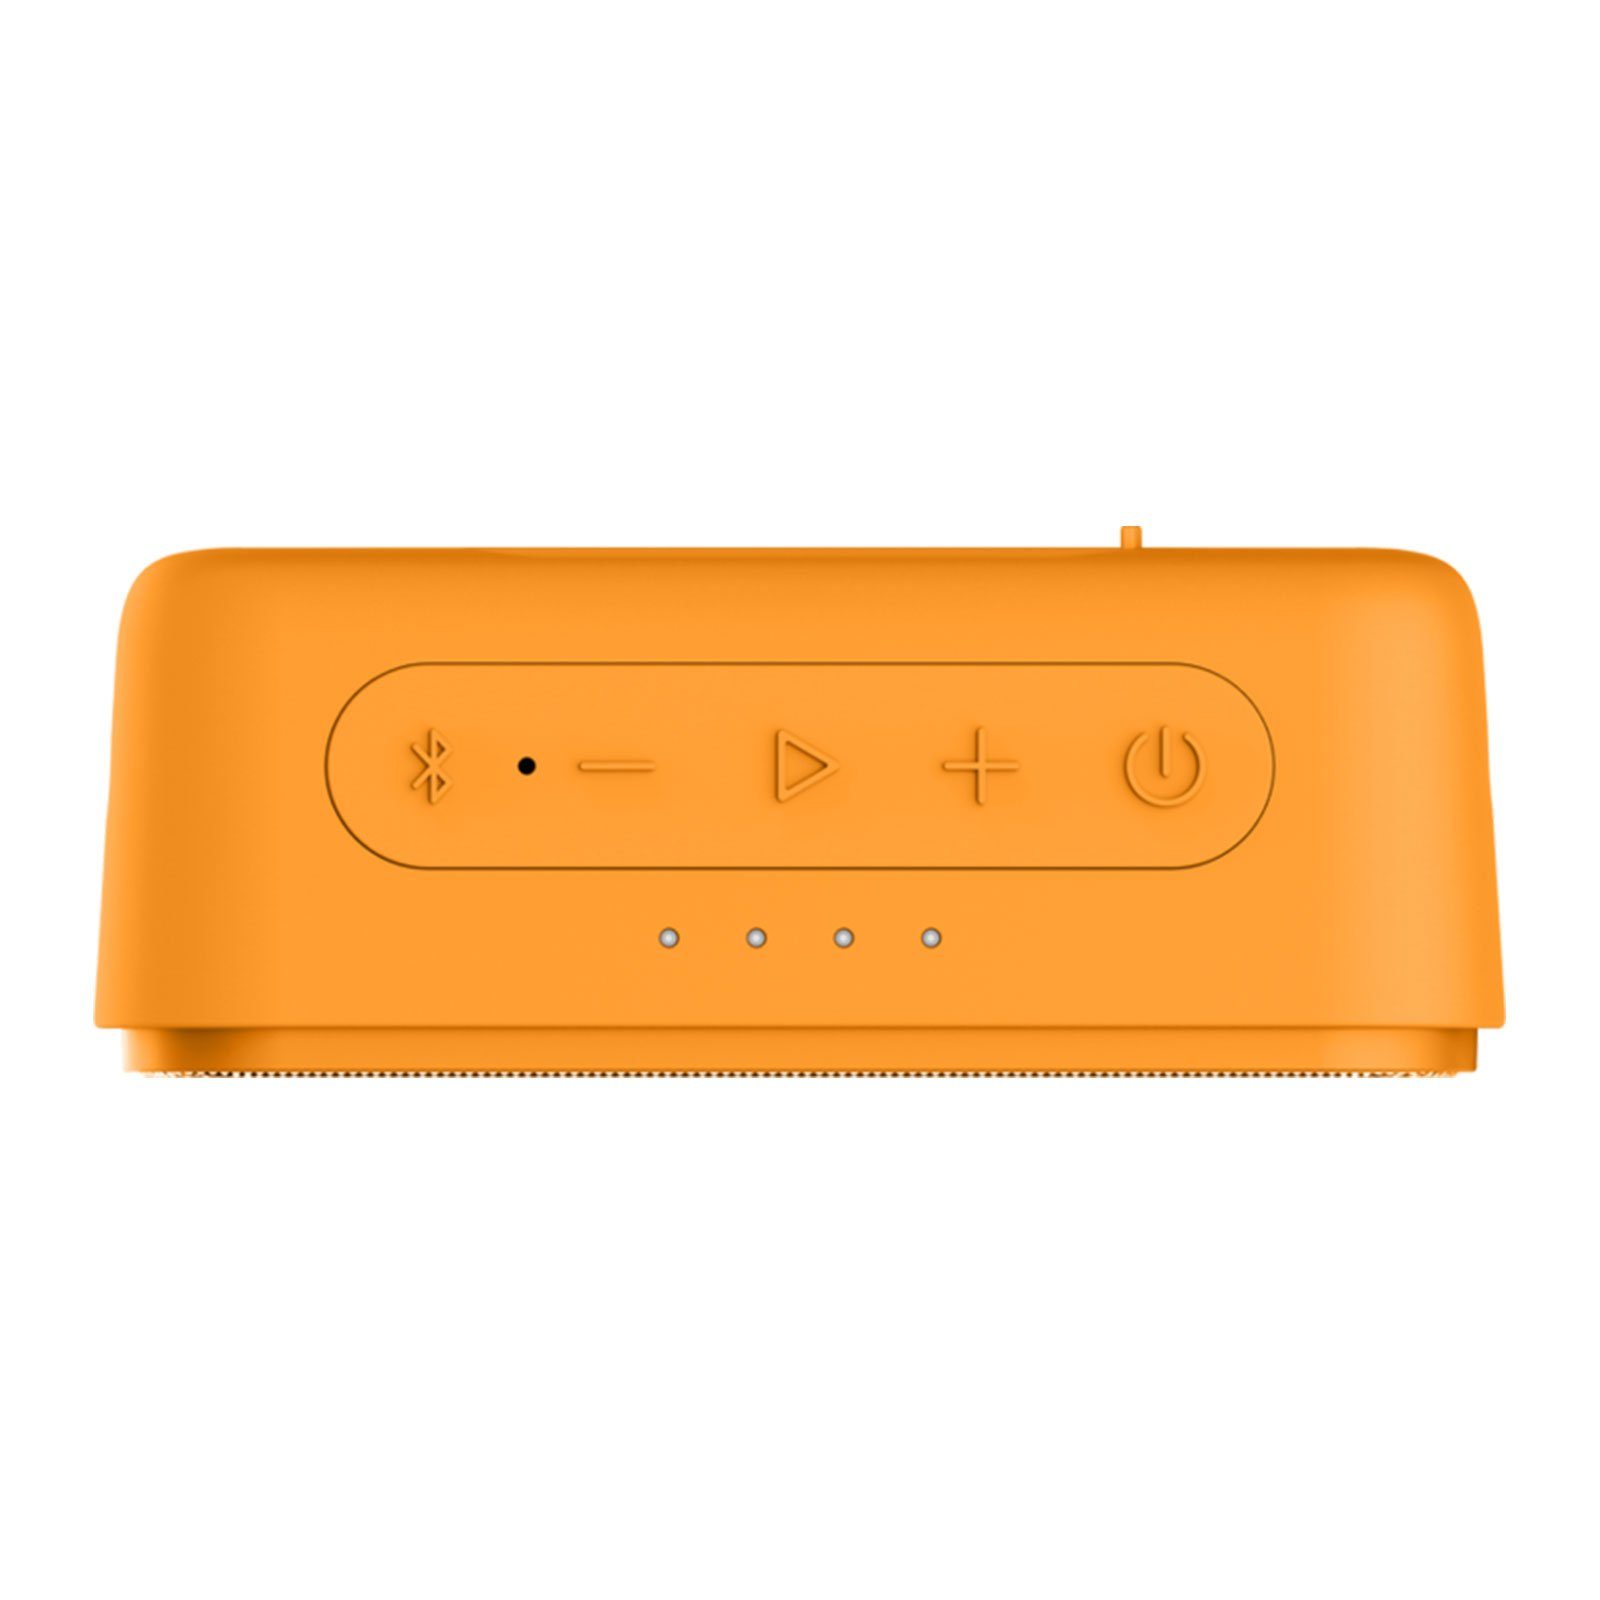 Grundig GBT JAM Lautsprecher Bluetooth-Lautsprecher Orange W) (3.5